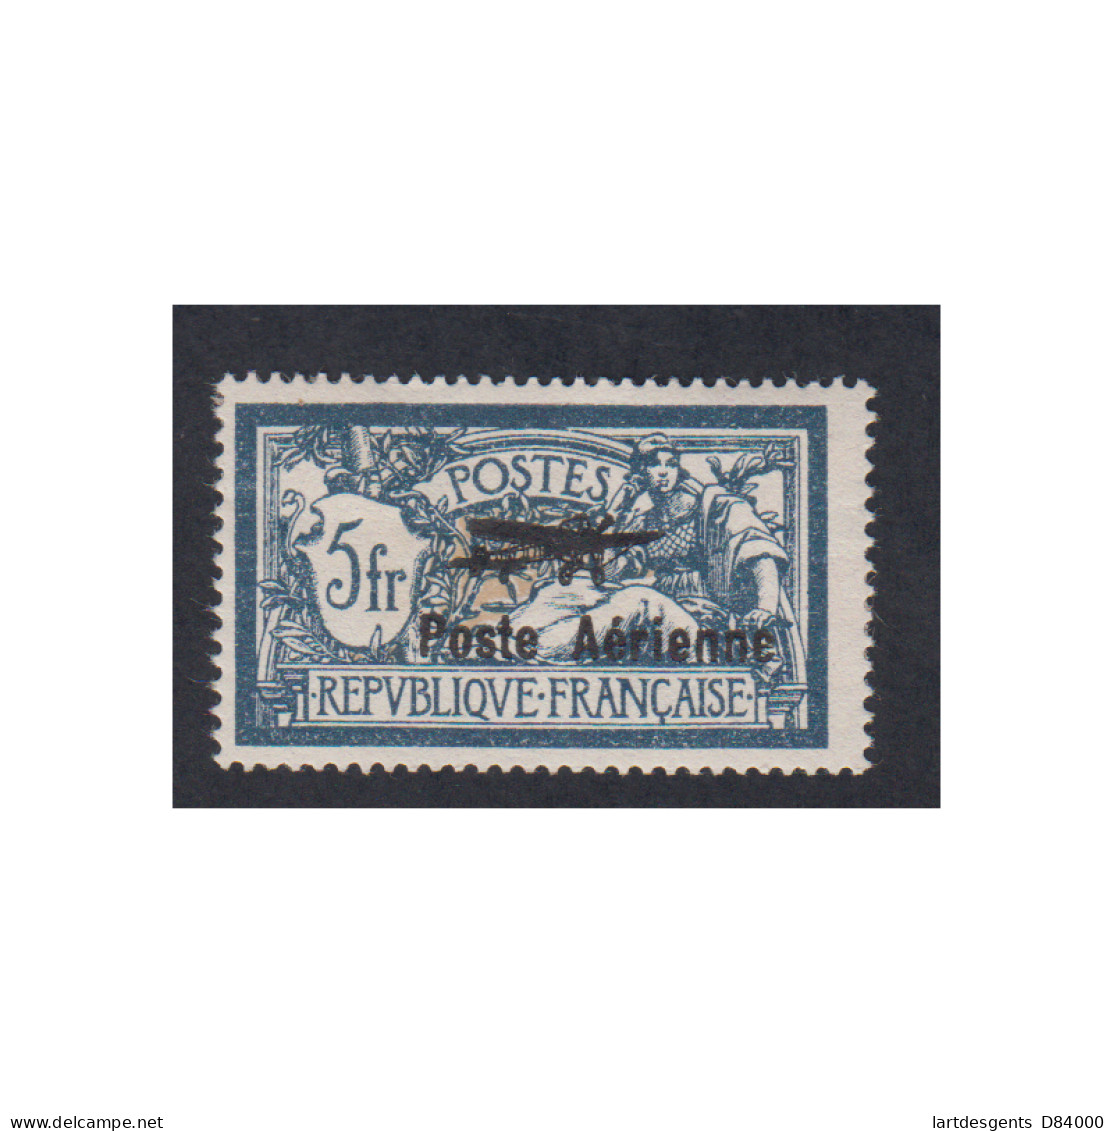 Timbre Poste Aérienne - Année 1927 - N°2 - Neuf* Signé Cote 250 Euros -lartdesgents.fr - 1927-1959 Nuovi